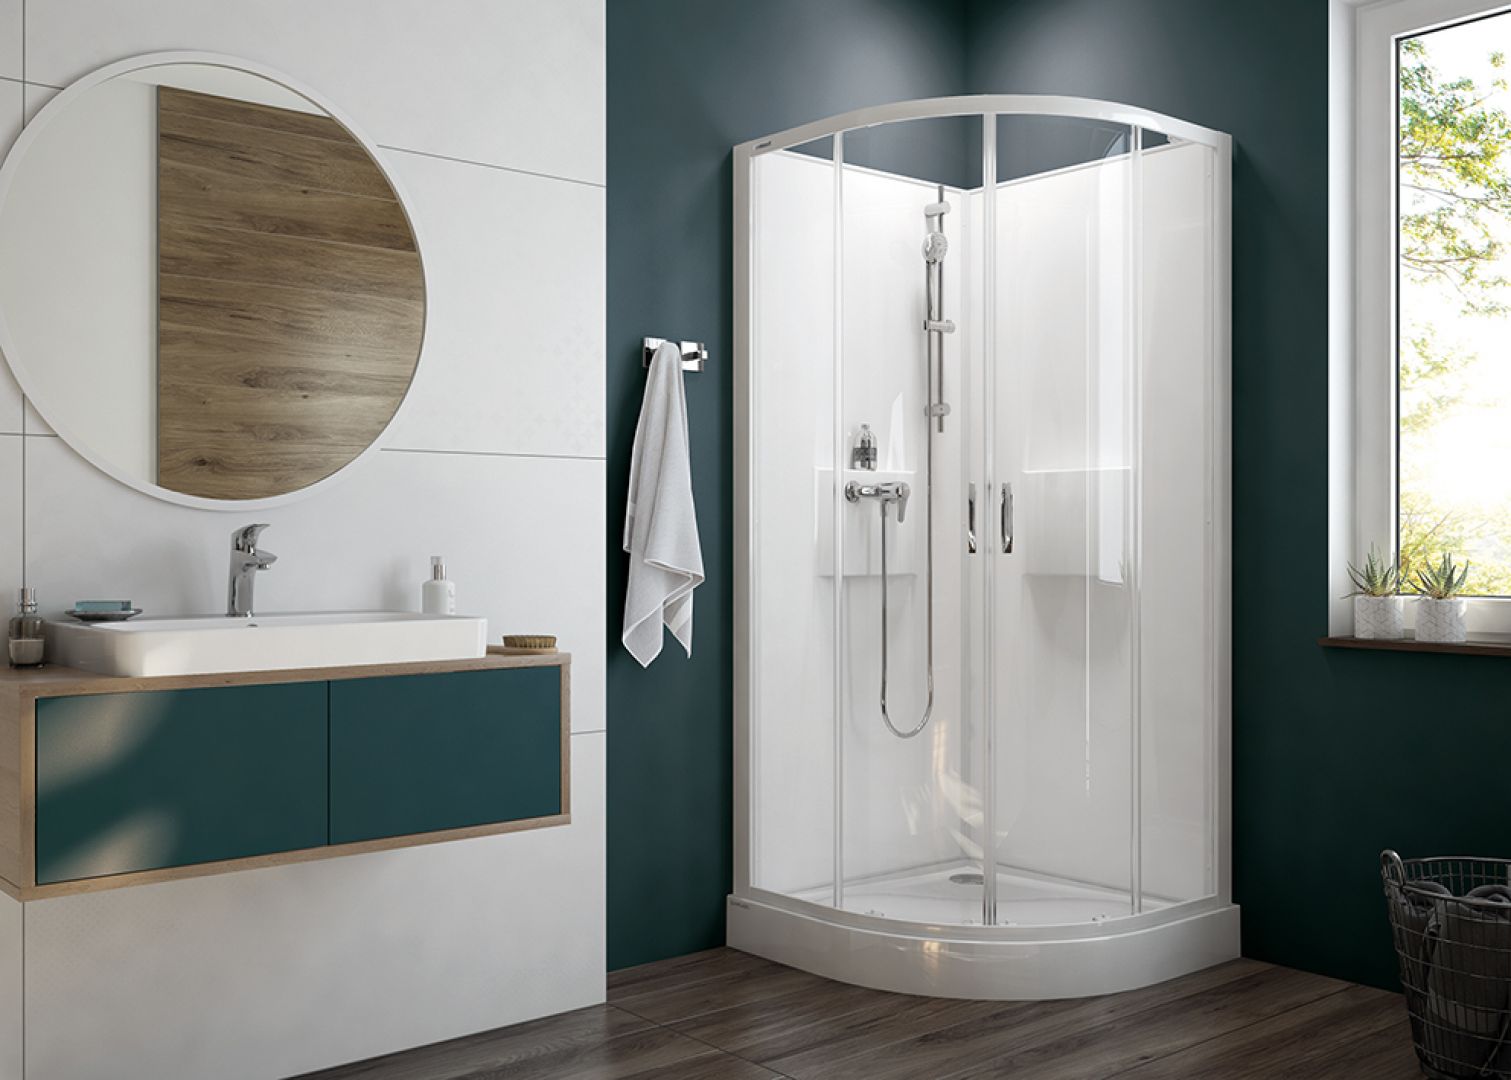 Seria Basic Complete to kompletne kabiny prysznicowe, które dostępne są w zestawach z brodzikiem. Cena: od 3.442 zł. Fot. Sanplast